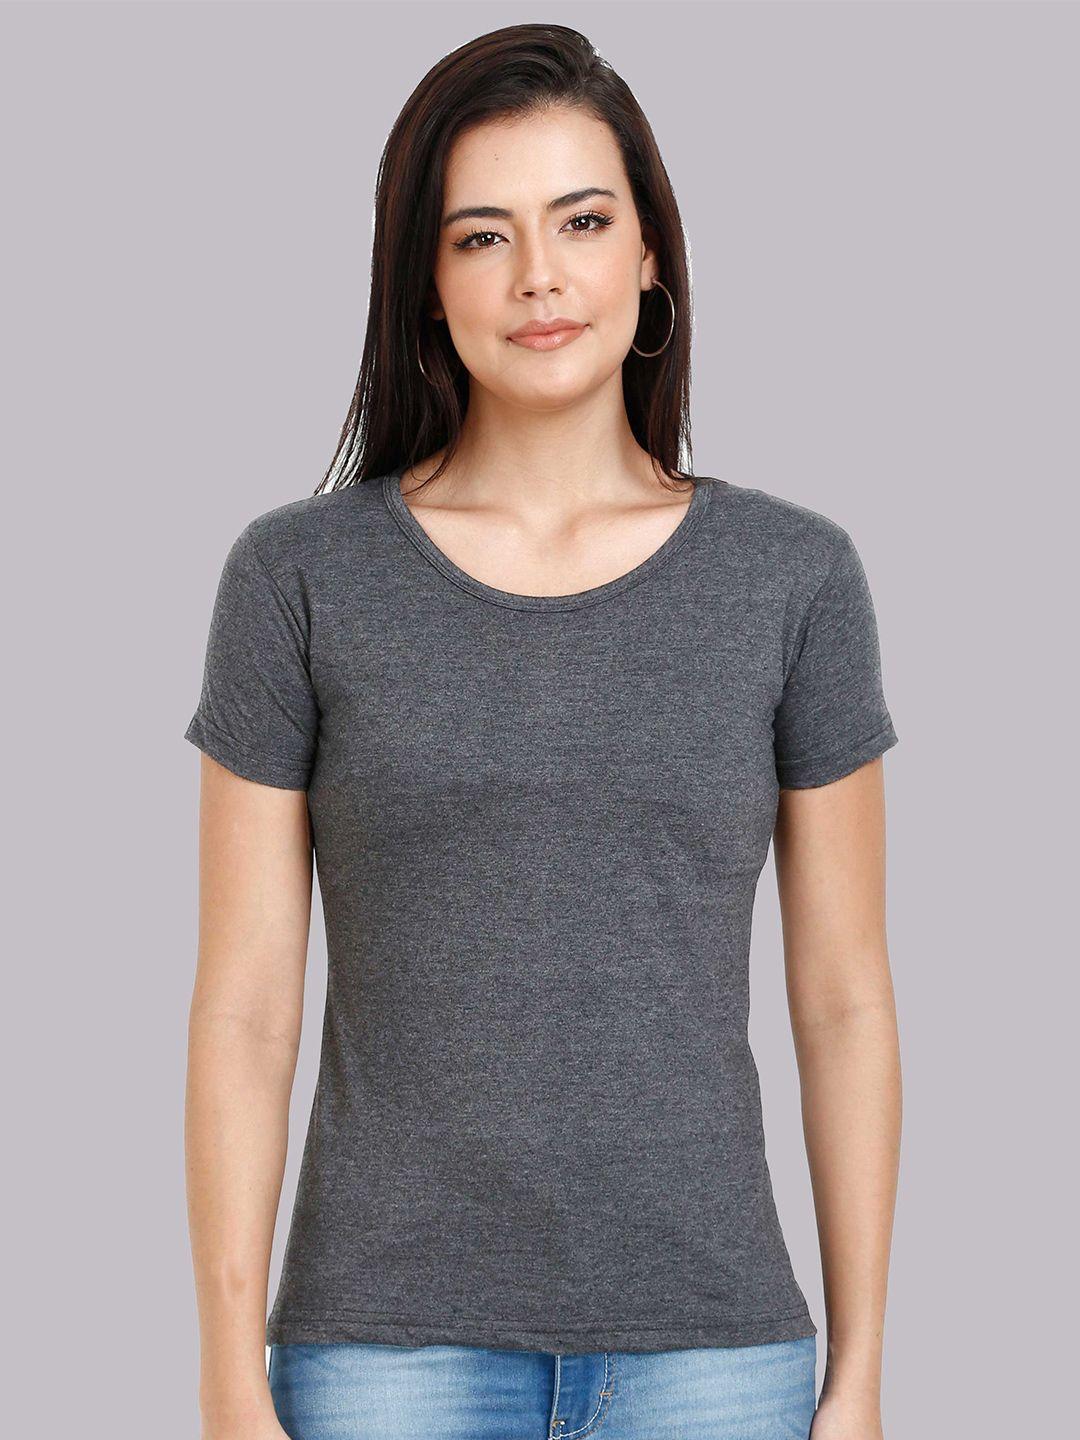 fleximaa-women-charcoal-running-t-shirt